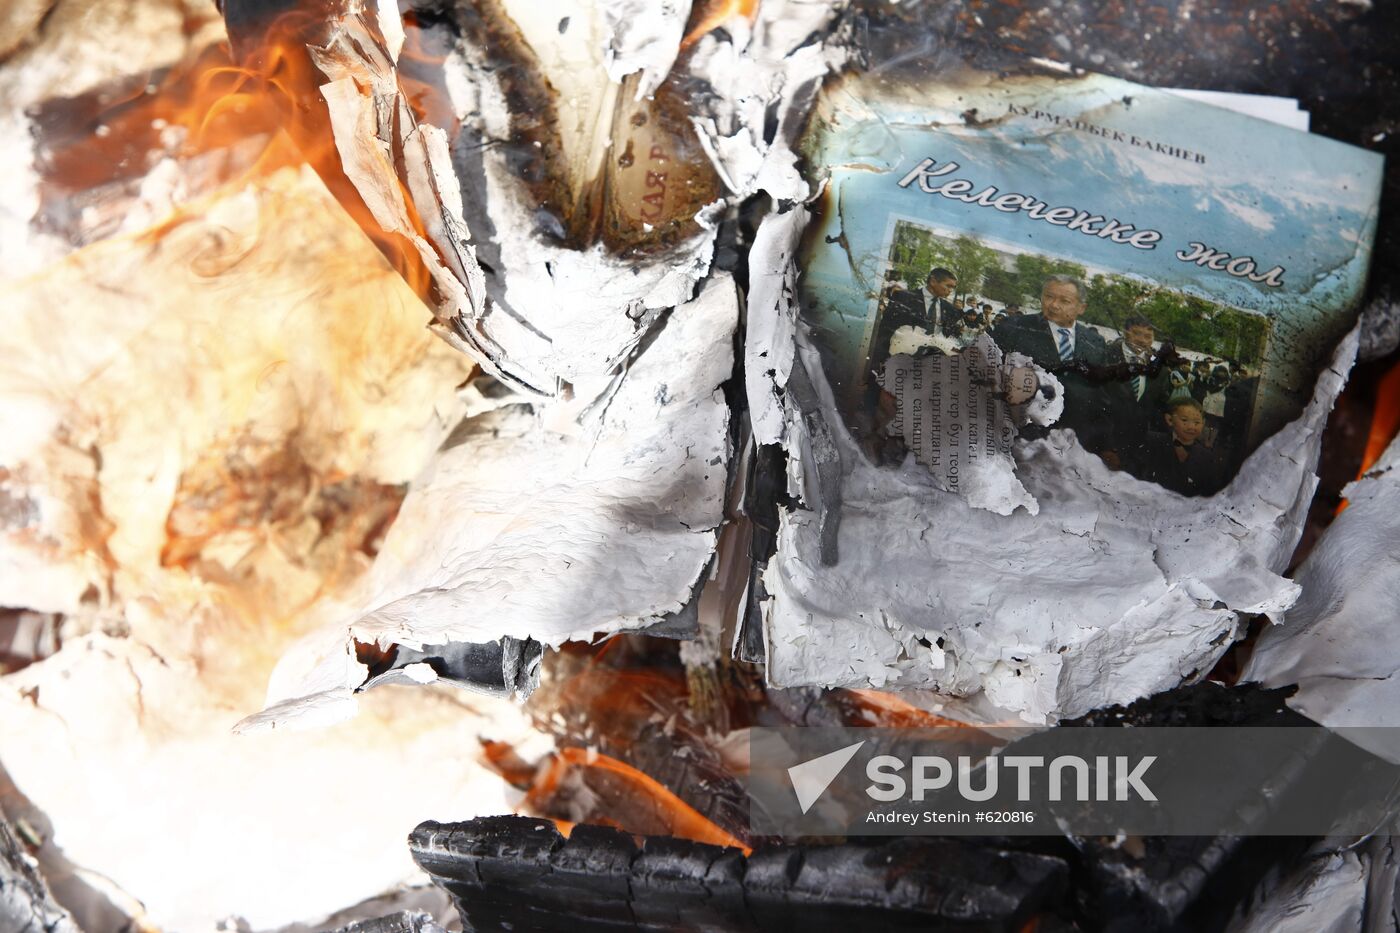 Burnt book by Kyrgyzstan President Kurmanbek Bakiyev